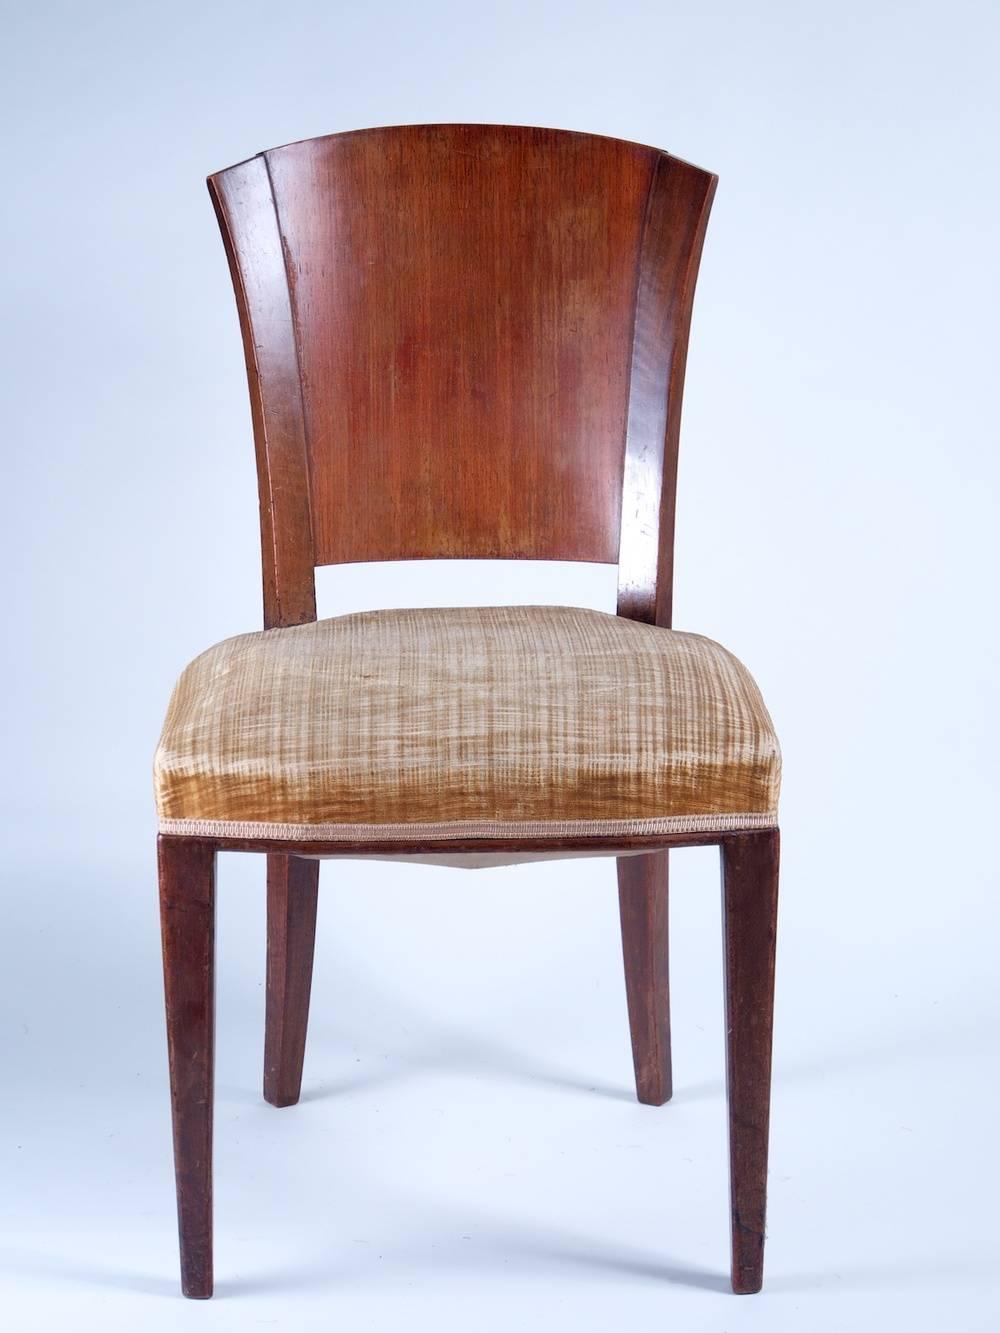 Chaises de salle à manger Art Déco moderniste français, ensemble de six, en bois de rose et noyer français, vers 1932.

Veuillez noter que ces chaises ne sont pas restaurées sur les photos.
 
**Le prix comprend la restauration, la remise en état